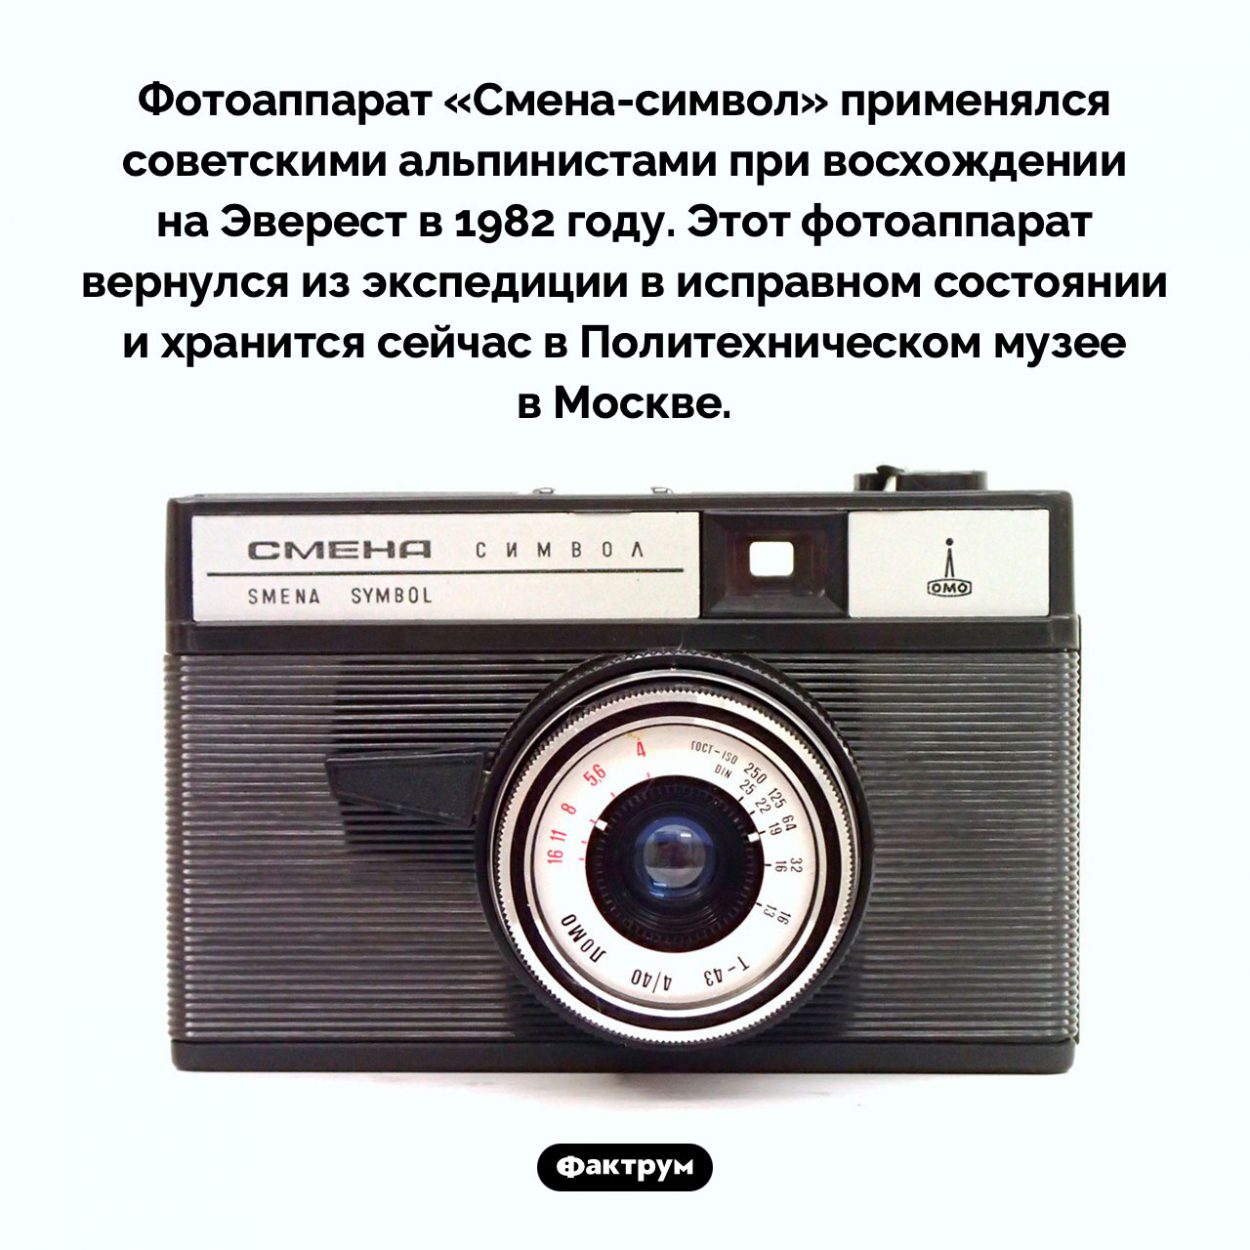 Фотоаппарат «Смена-символ». Фотоаппарат «Смена-символ» применялся советскими альпинистами при восхождении на Эверест в 1982 году. Этот фотоаппарат вернулся из экспедиции в исправном состоянии и хранится сейчас в Политехническом музее в Москве.